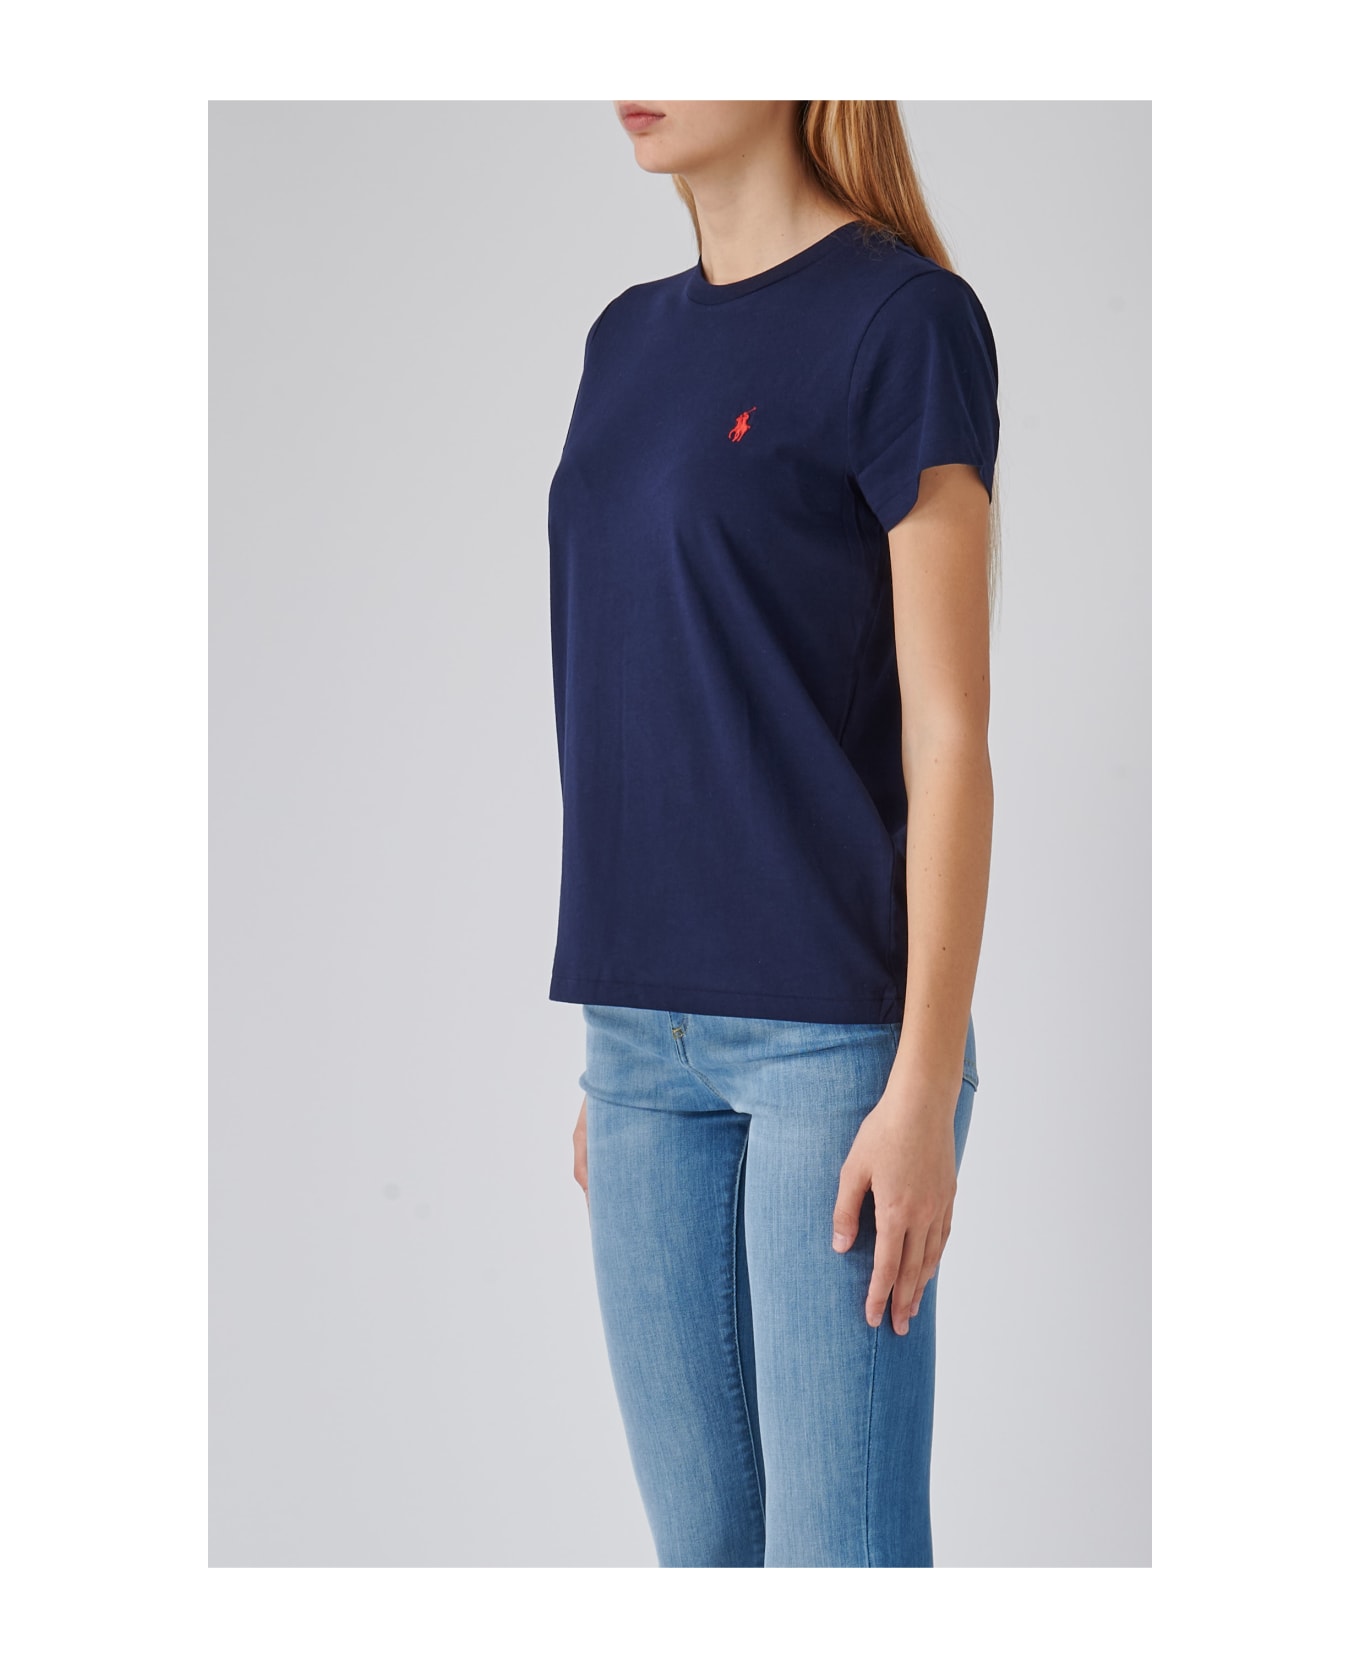 Polo Ralph Lauren Cotton T-shirt - NAVY